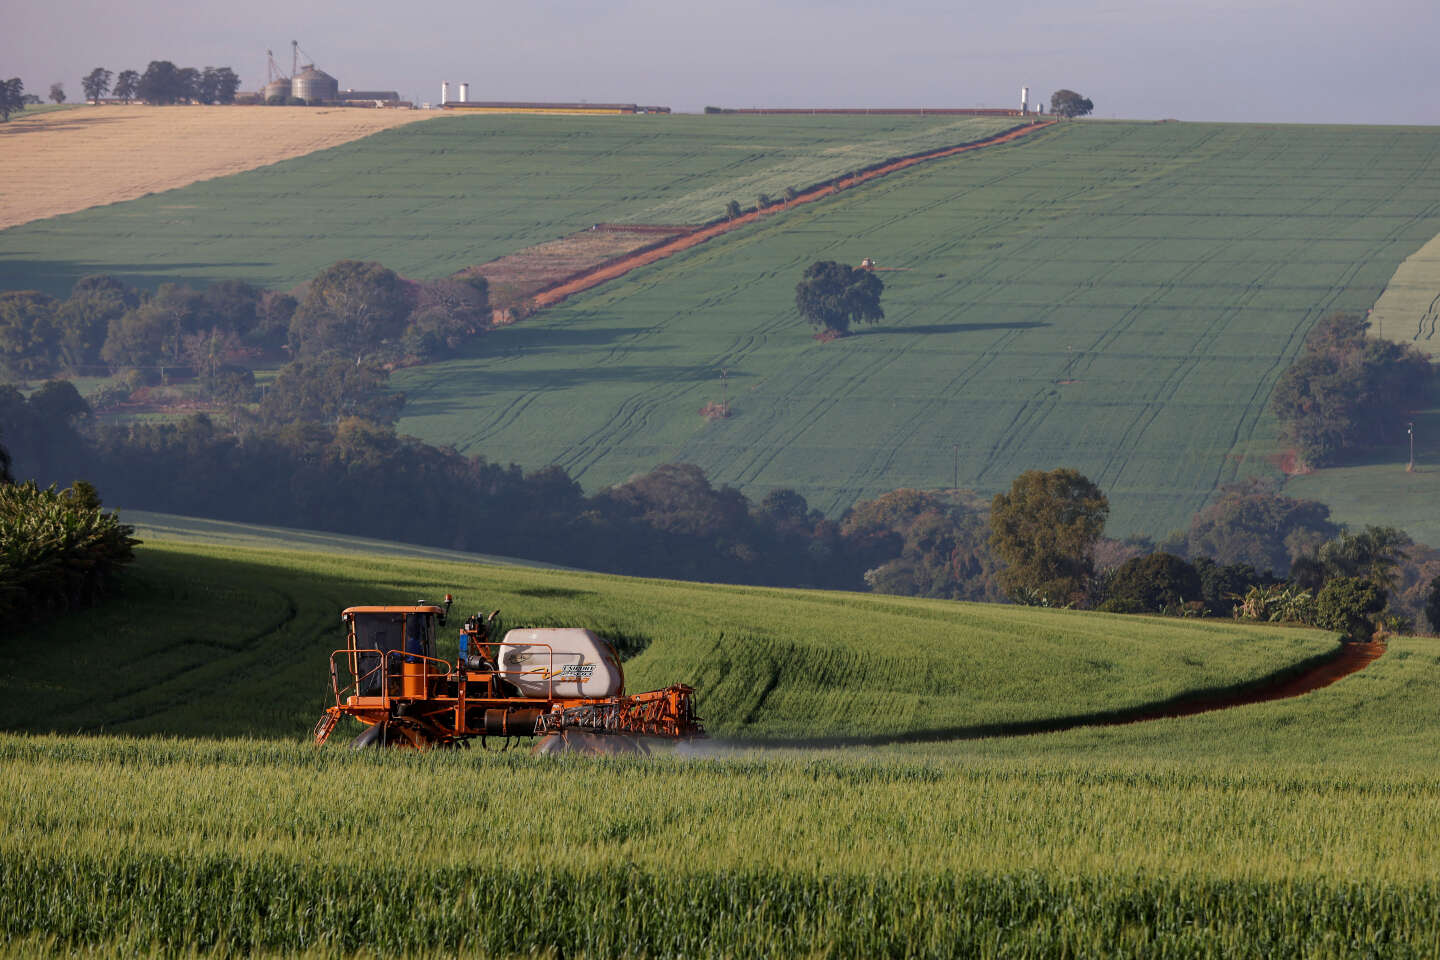 La Francia continua a esportare migliaia di tonnellate di pesticidi altamente tossici, nonostante i divieti sulla pratica